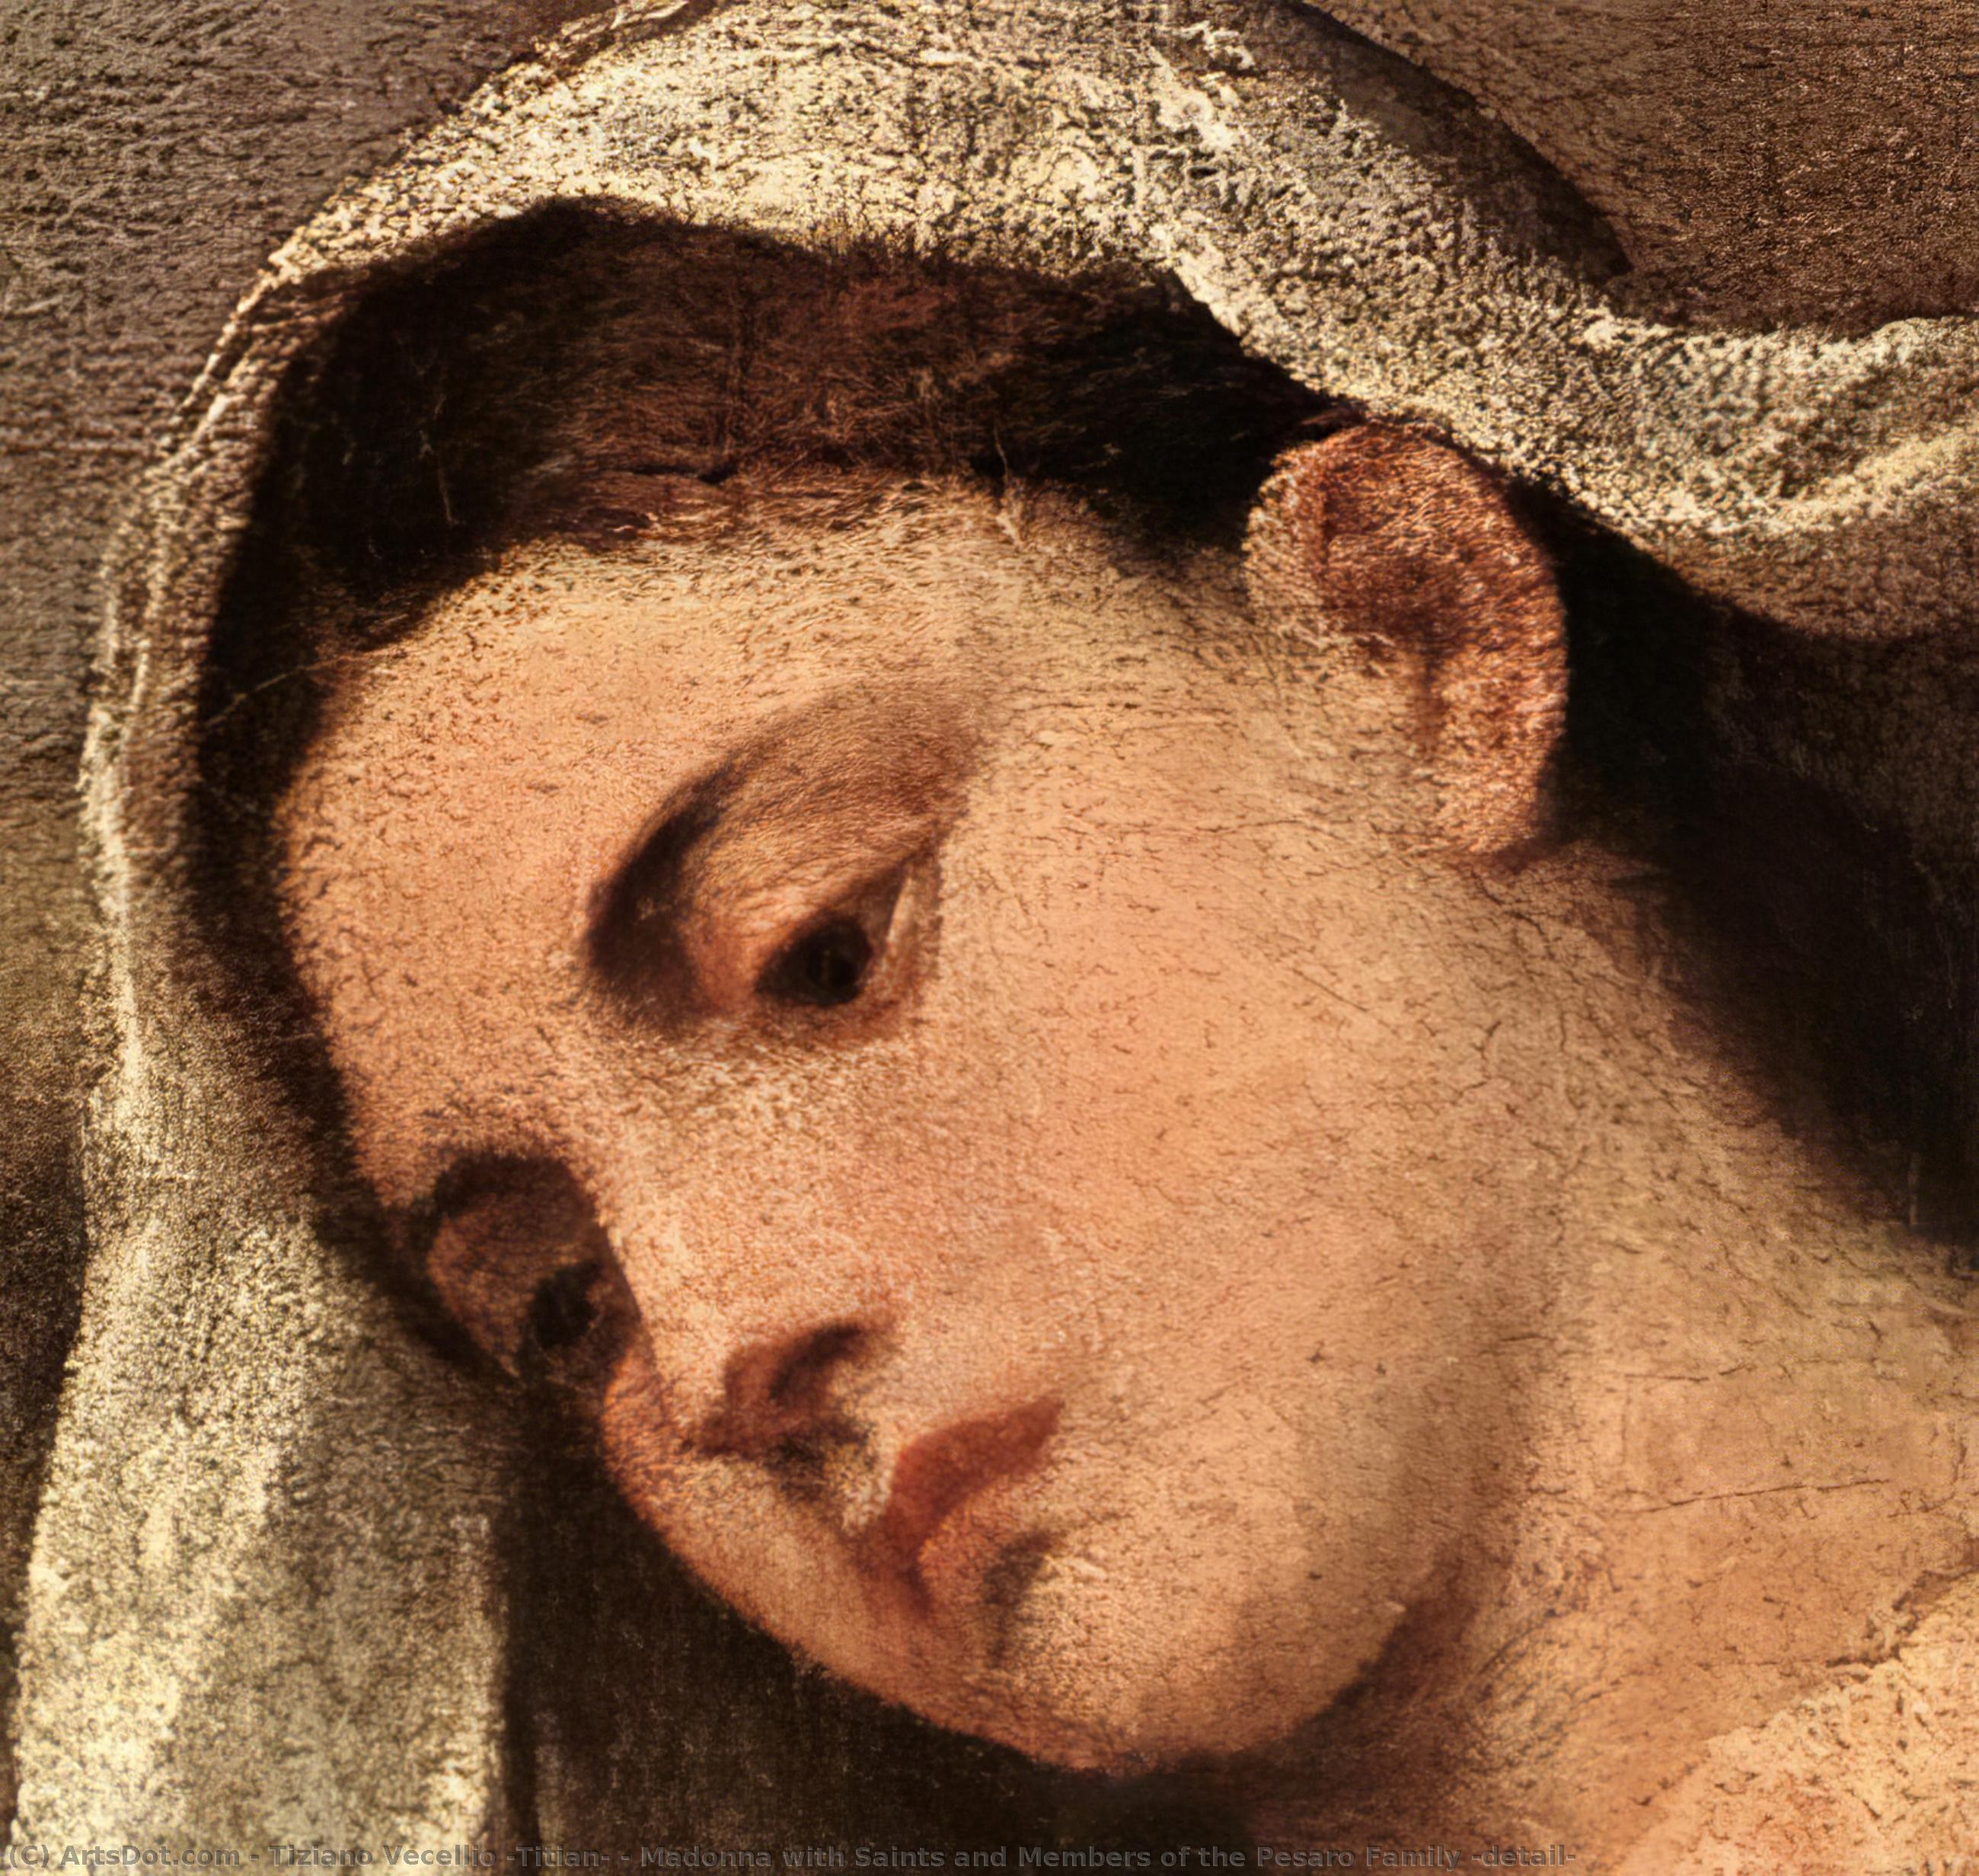 WikiOO.org – 美術百科全書 - 繪畫，作品 Tiziano Vecellio (Titian) - 麦当娜与圣徒和佩萨罗家族成员 ( 详情 )